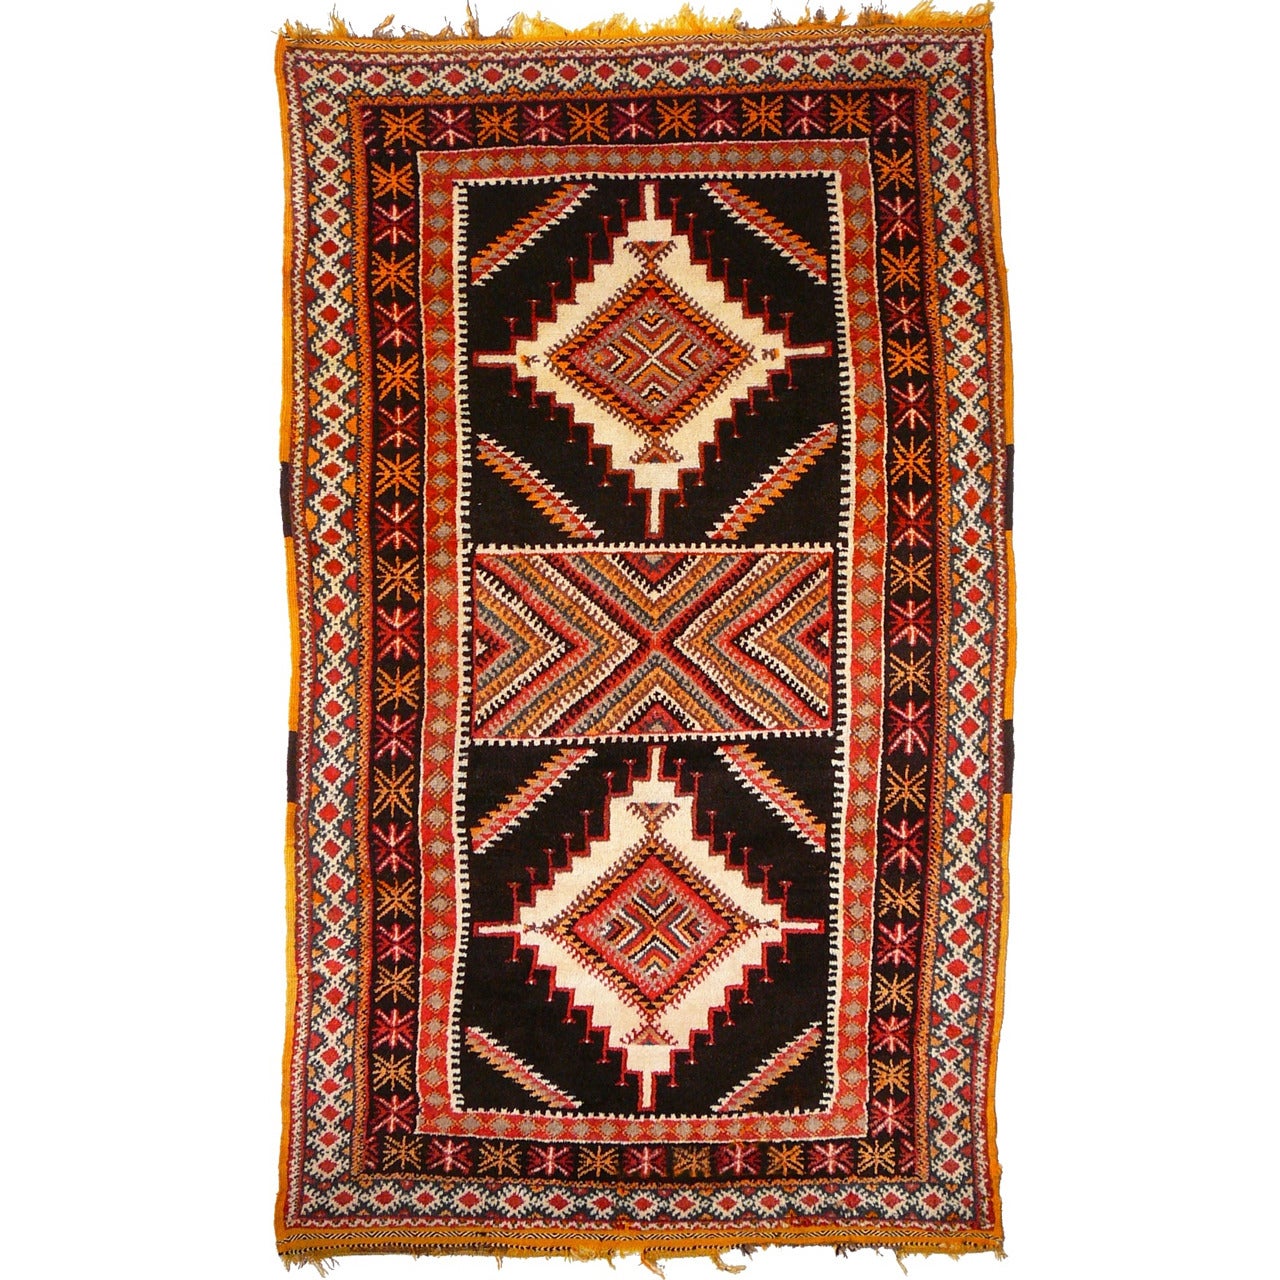 A Vintage Moroccan Berber Rug